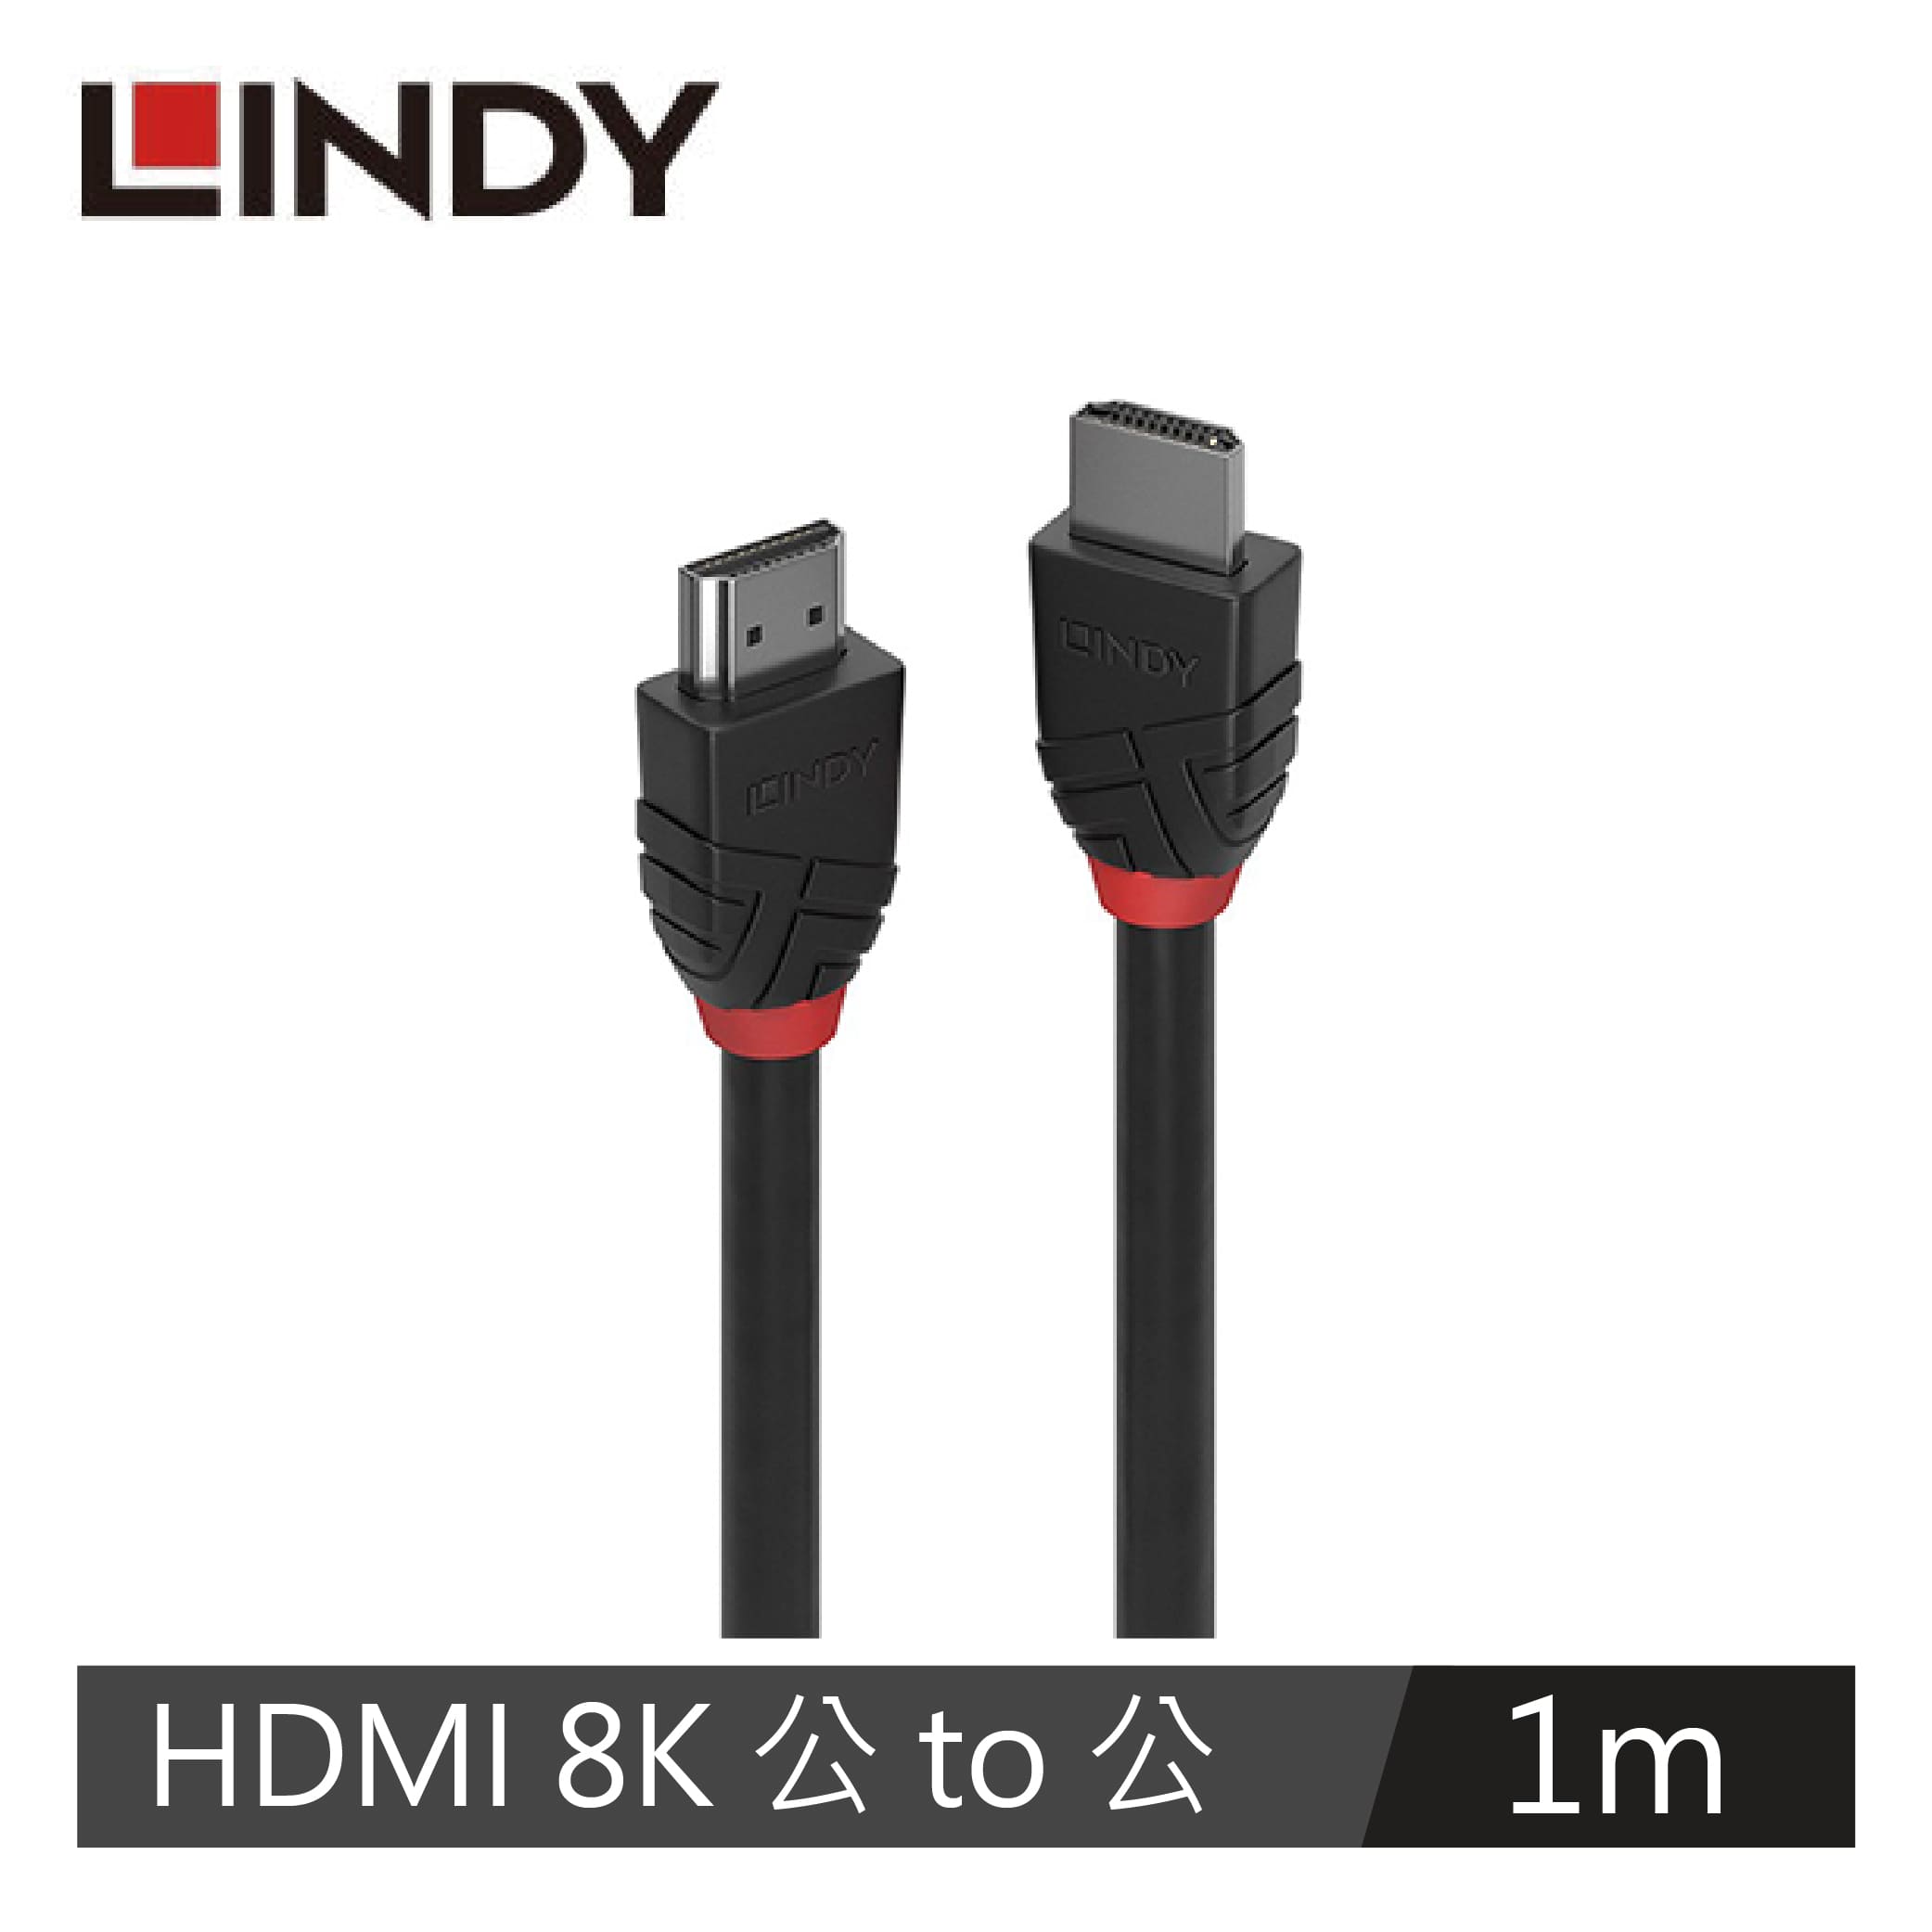 LINDY林帝 BLACK LINE 8K HDMI(TYPE-A) 公 TO 公傳輸線, 1M